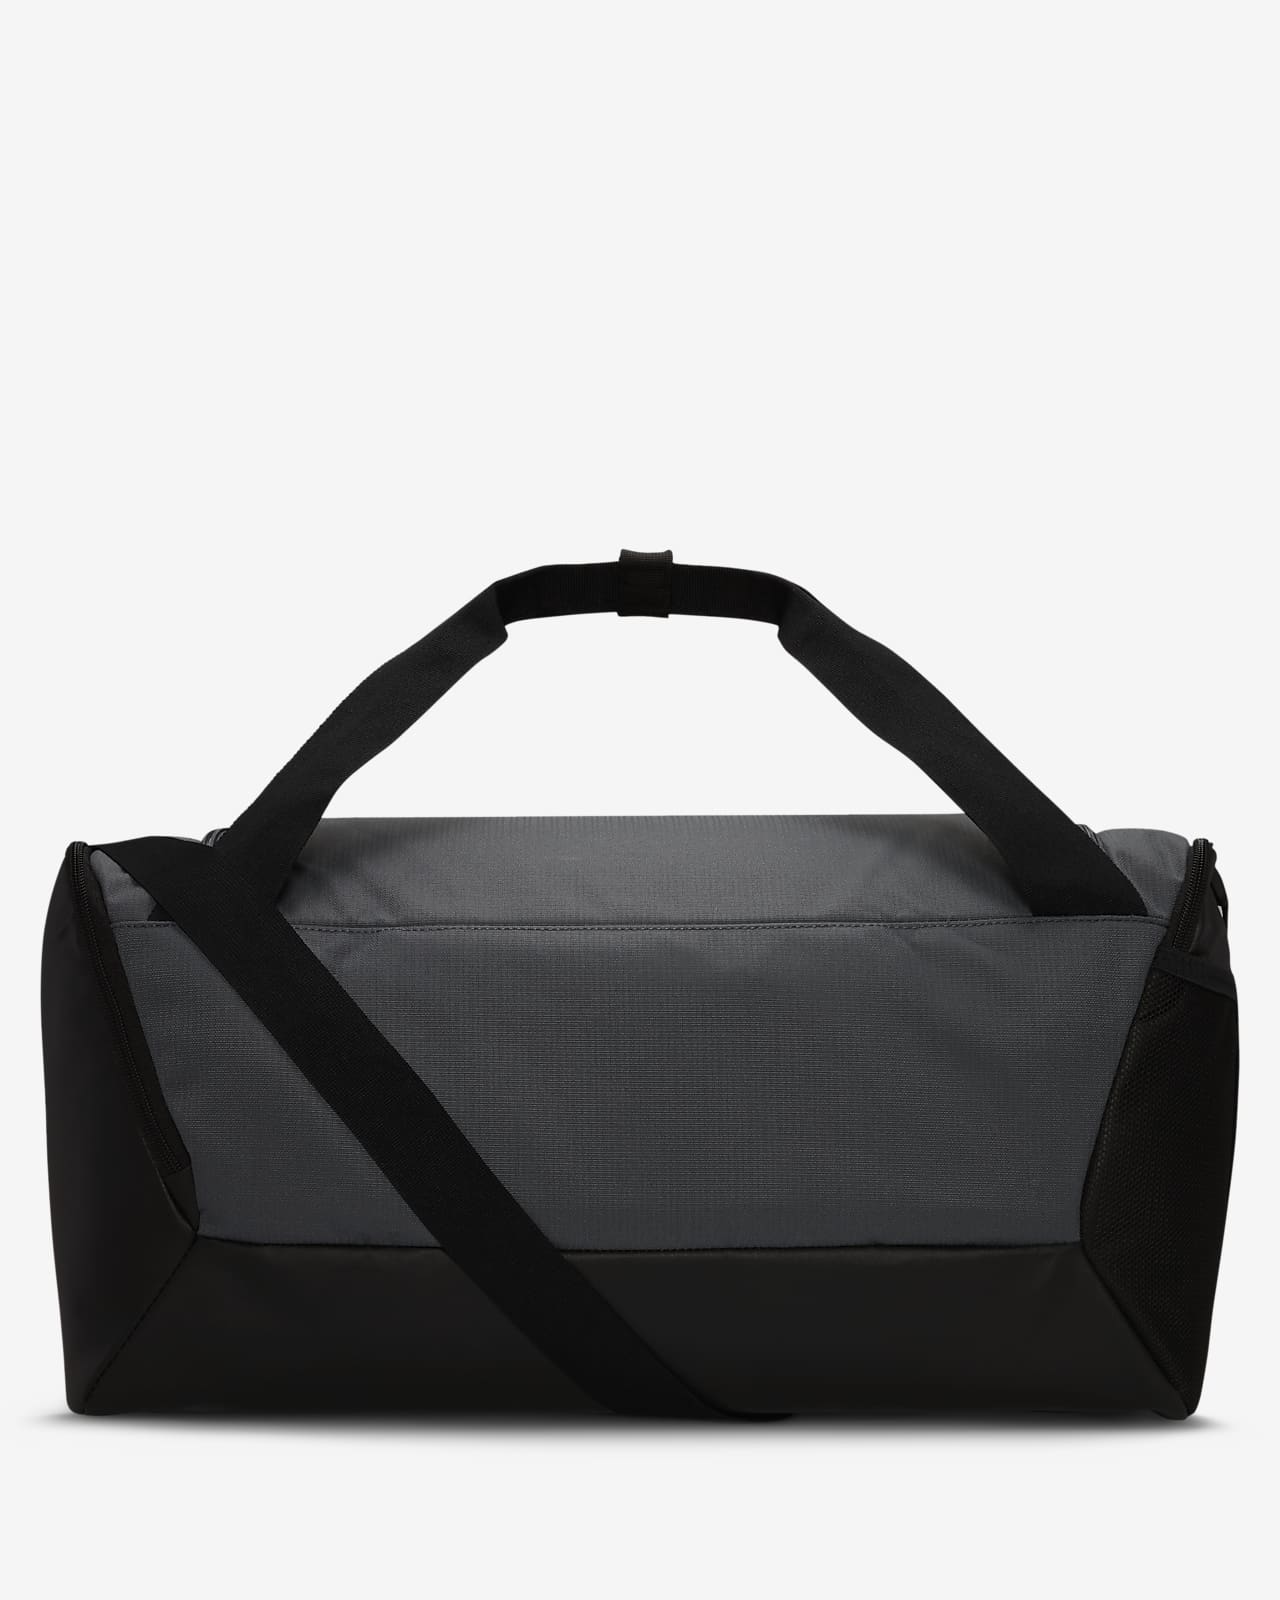 NIKE Brasilia Training Duffel Bag, Black/Black/White, X-Small 